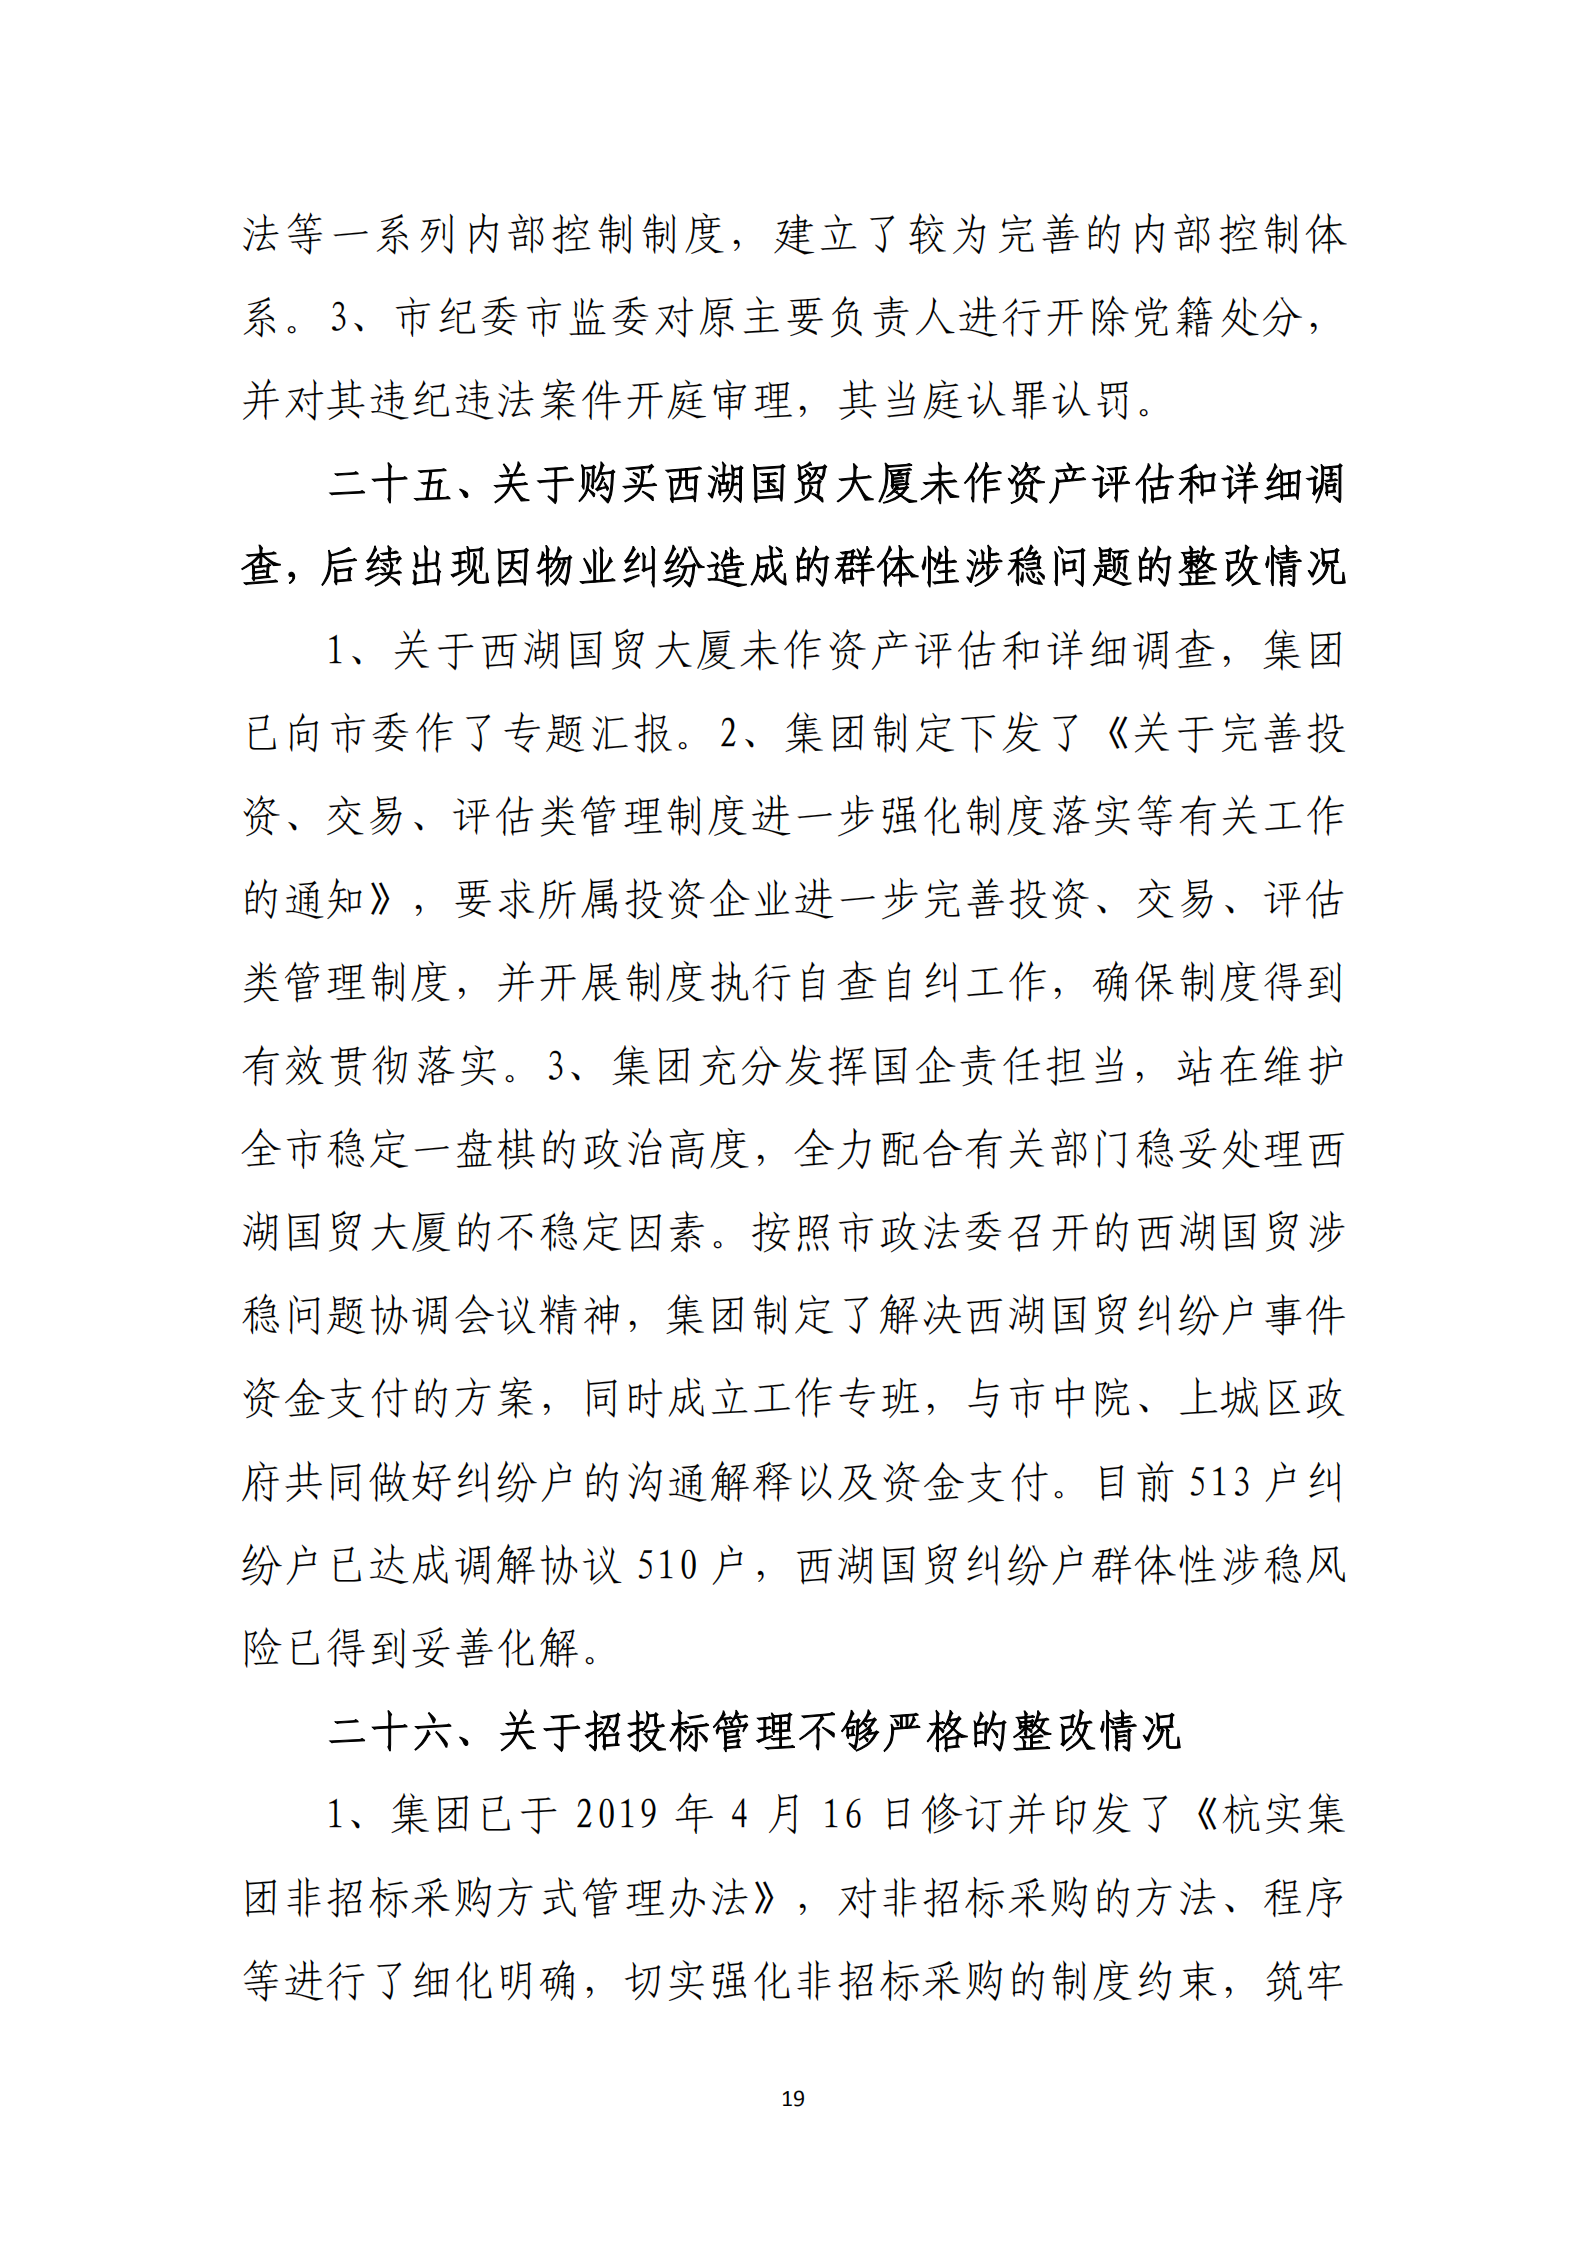 博乐体育网页【中国】有限公司党委关于巡察整改情况的通报_18.png